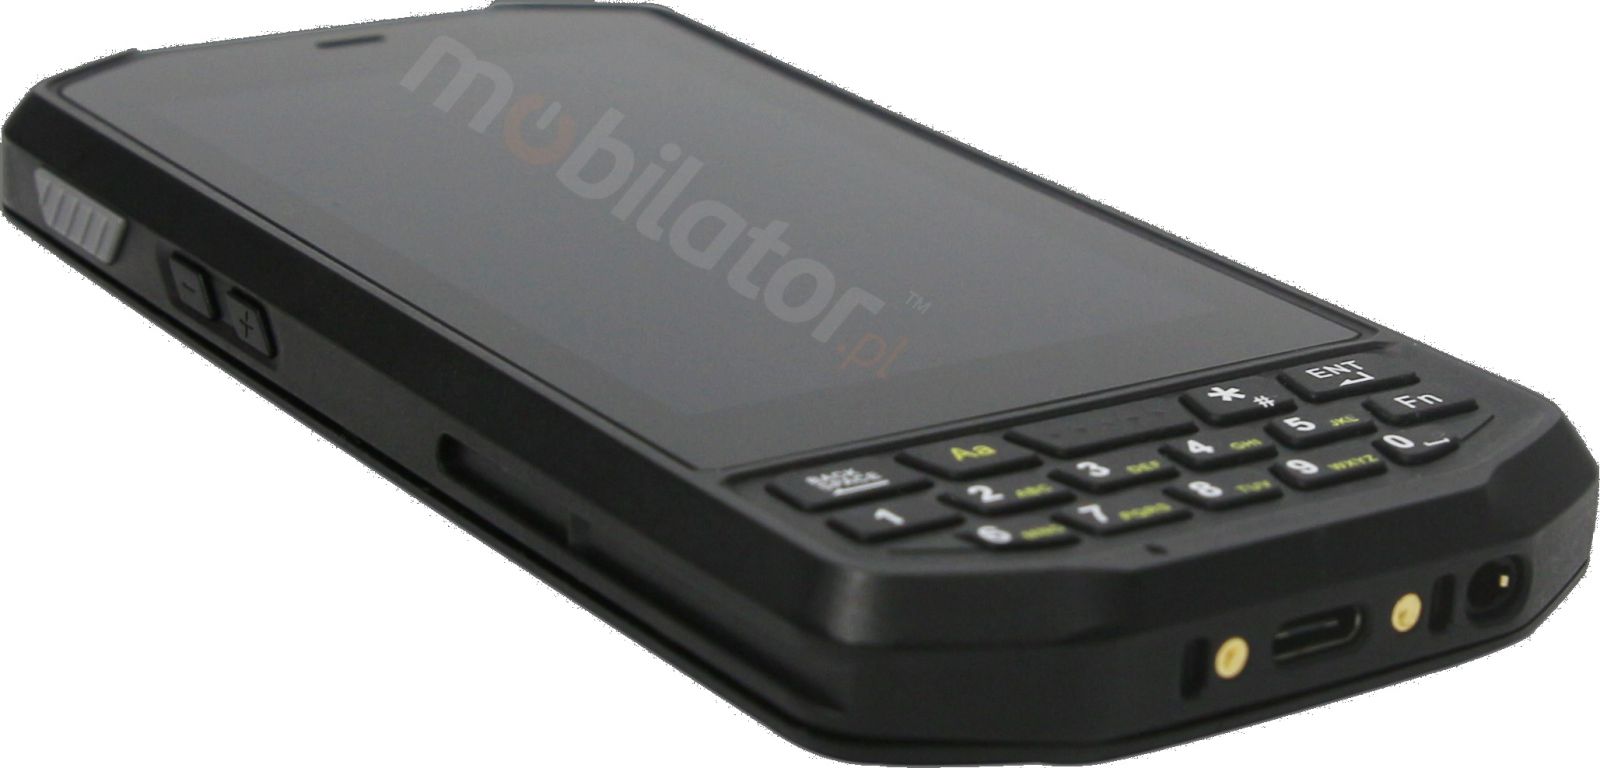 Mobipad Qxtron 4100 v.7 - (IP65 + MIL-STD-810G) odporny na upadki terminal danych ze skanerem Honeywell 2D, 4GB RAM i 64GB pamici z Androidem 9.0.